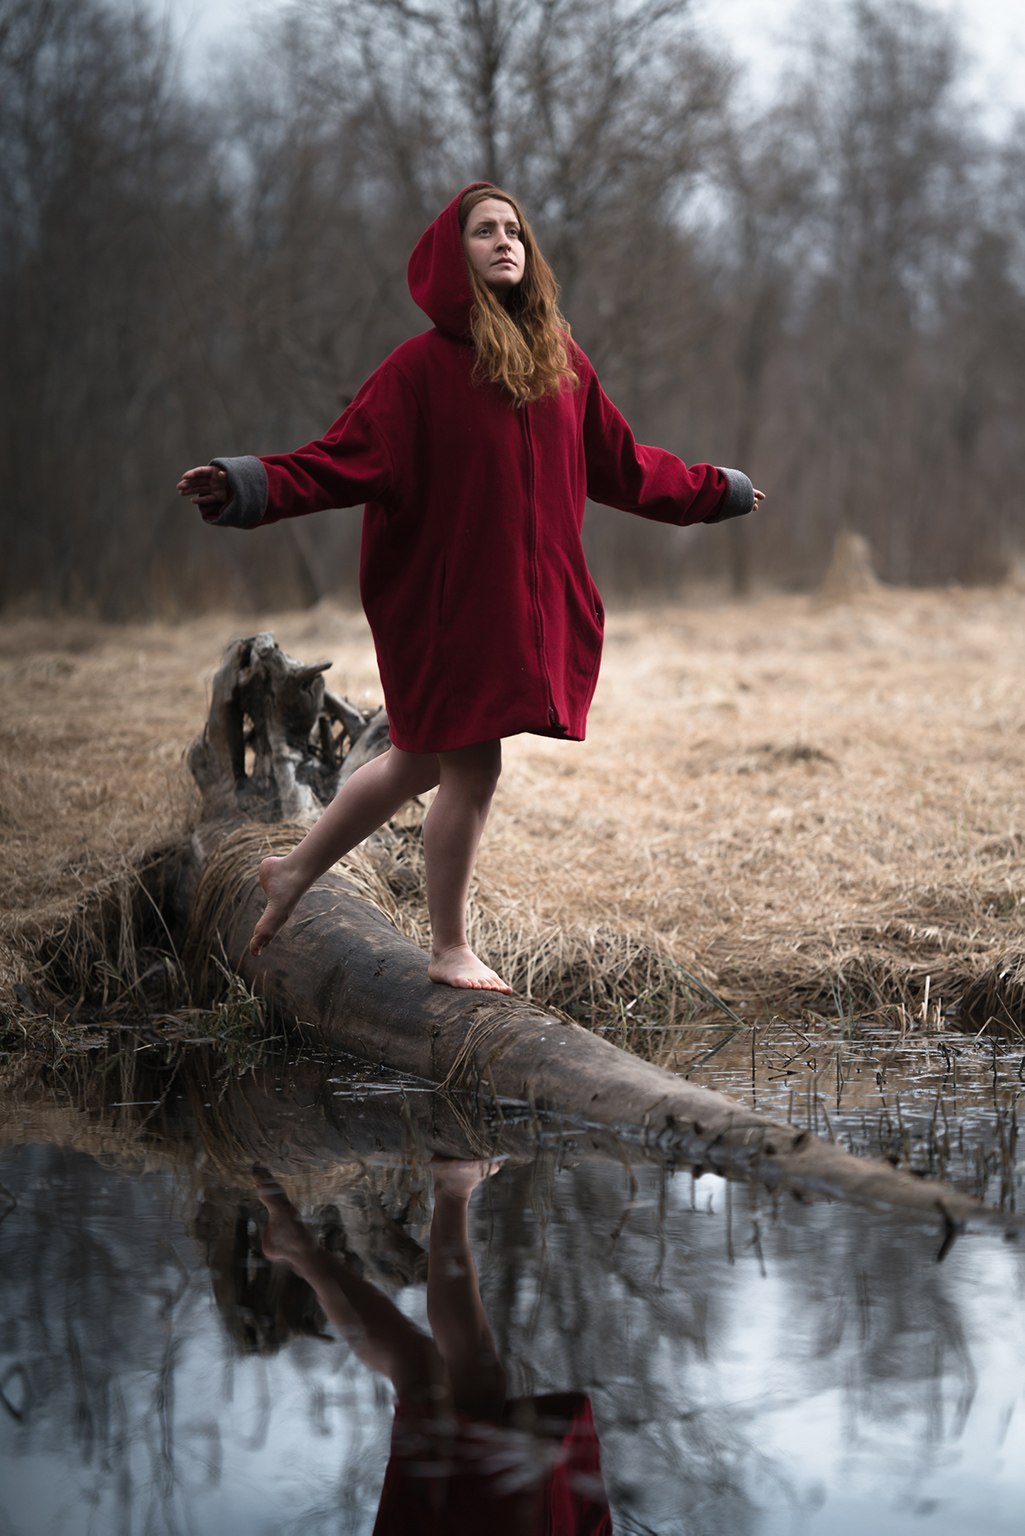 Jessie Lewis Skoglund i röd luva, balanserandes på en trädstam i en bäck